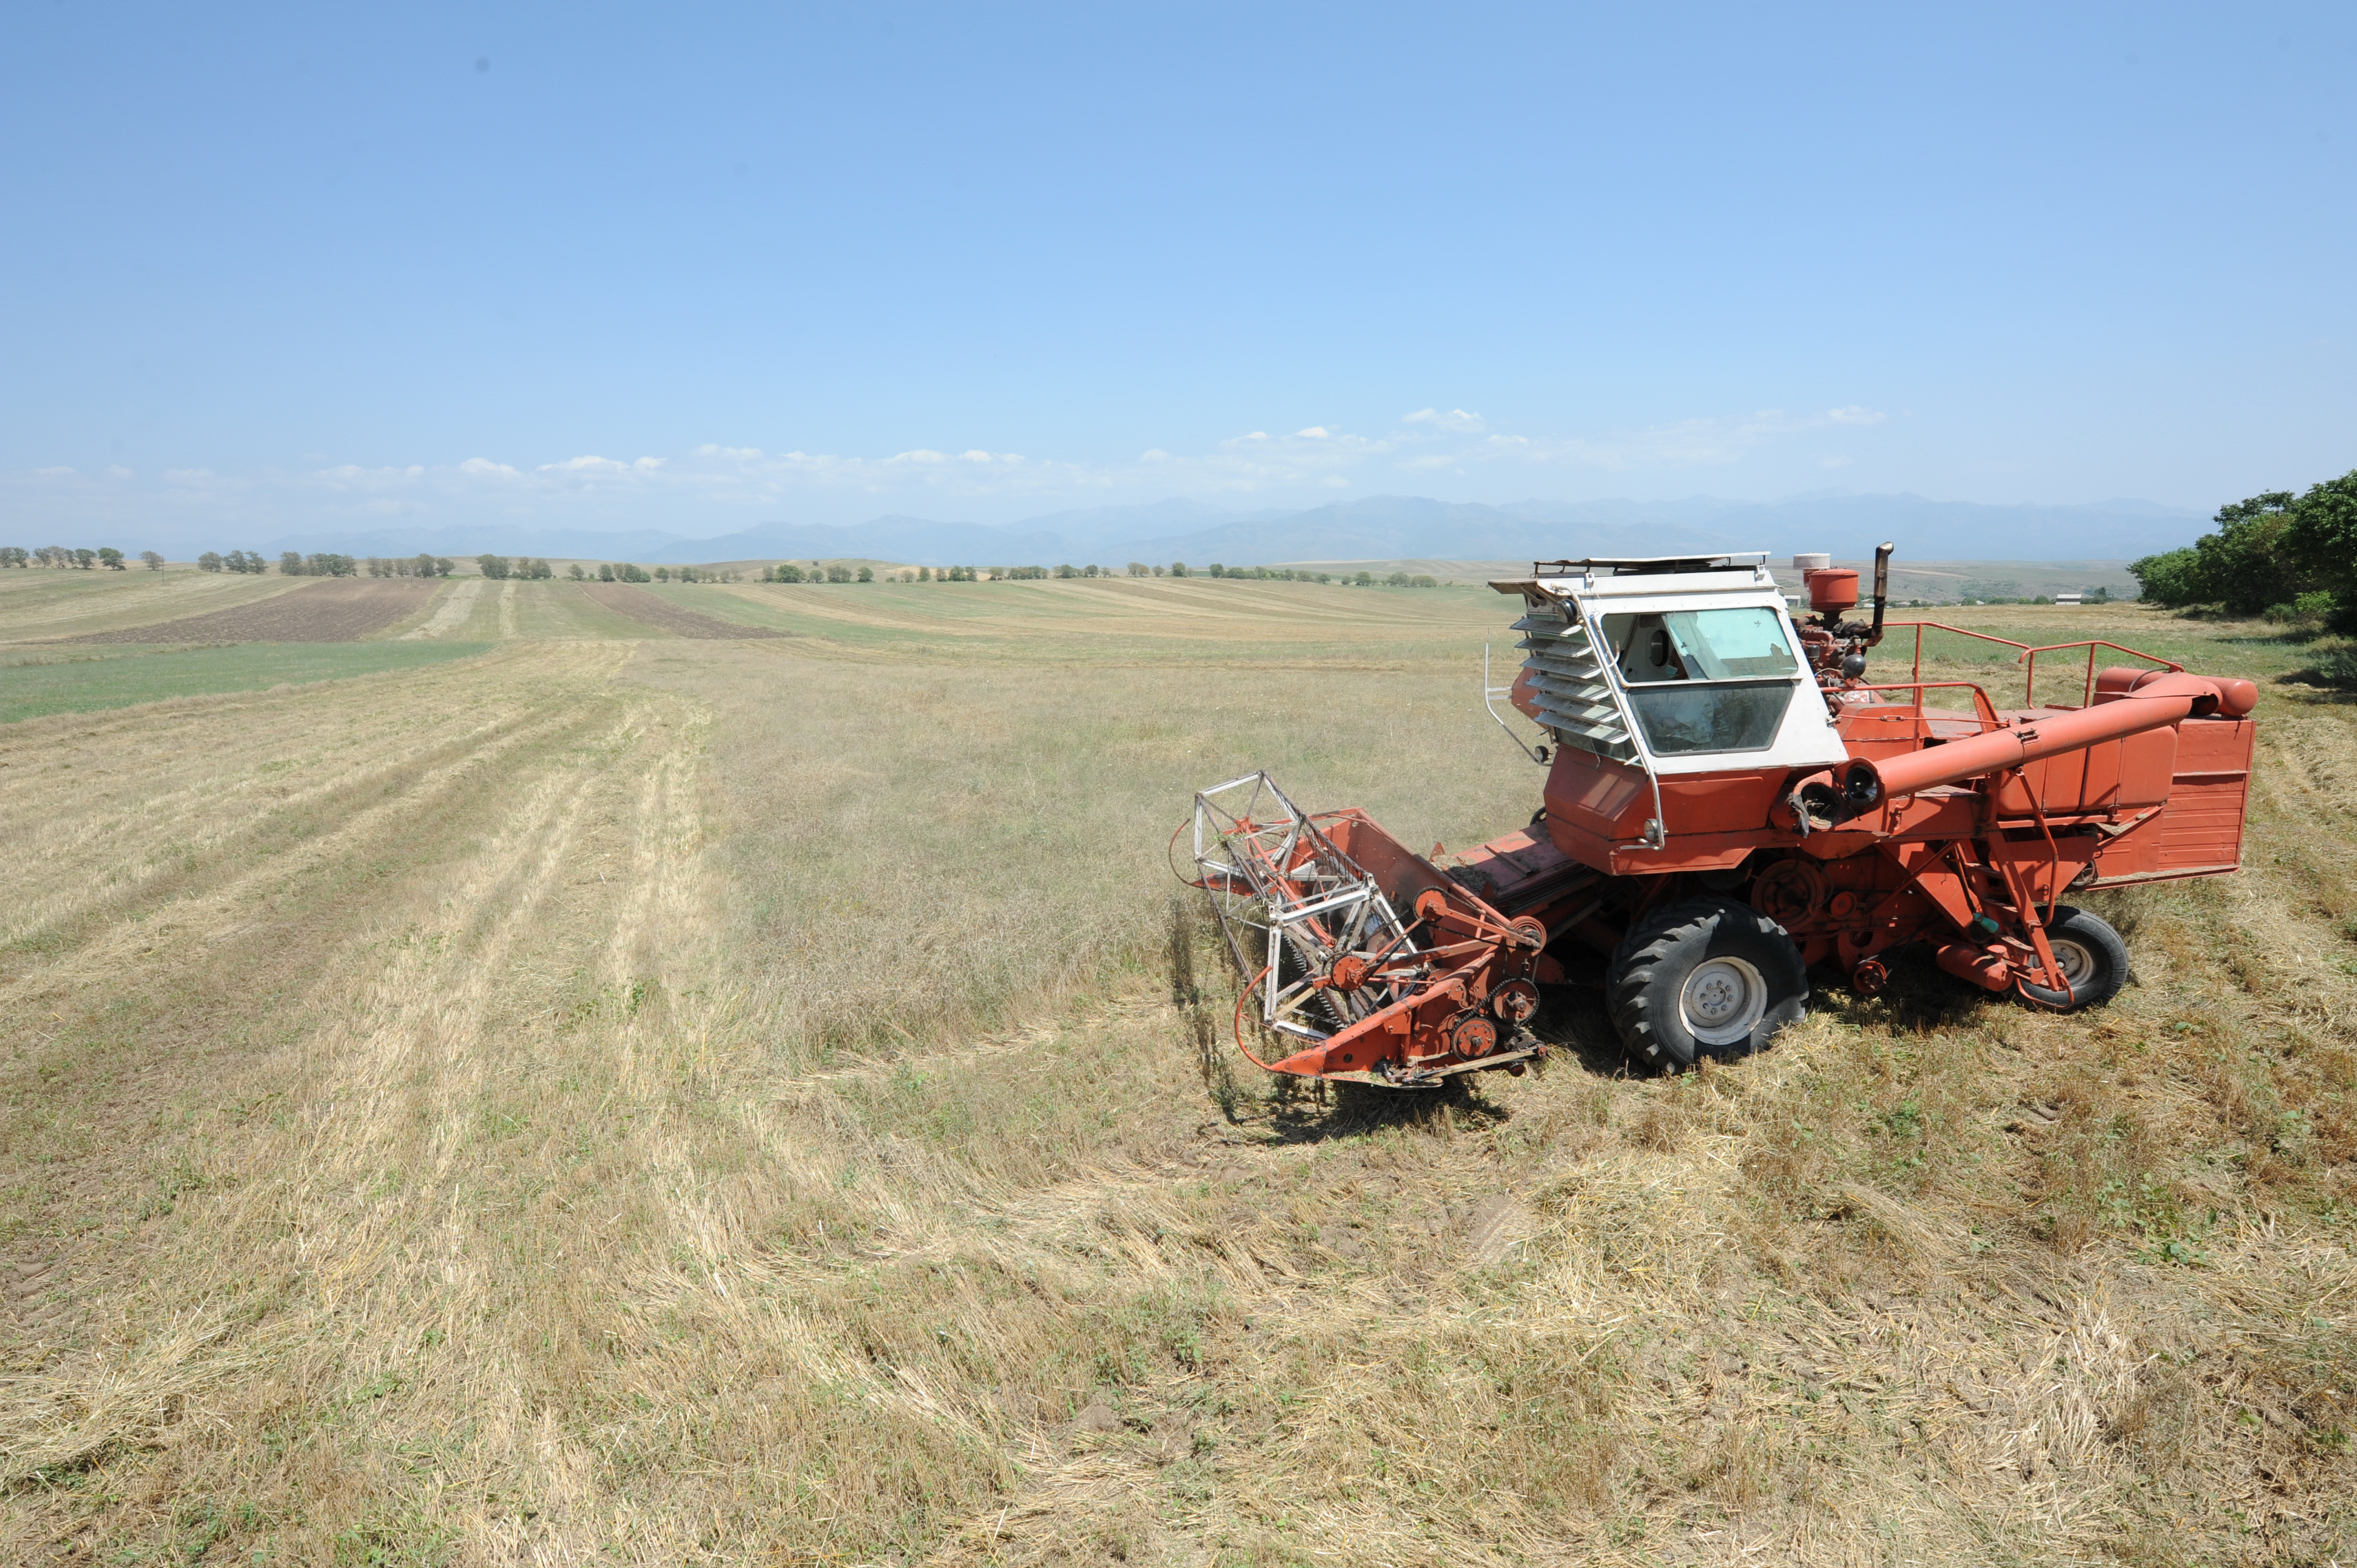 Հայաստանի ֆերմերները կարող են լիզինգով ձեռք բերել գյուղատնտեսական տեխնիկա, ցածր տոկոսադրույքով